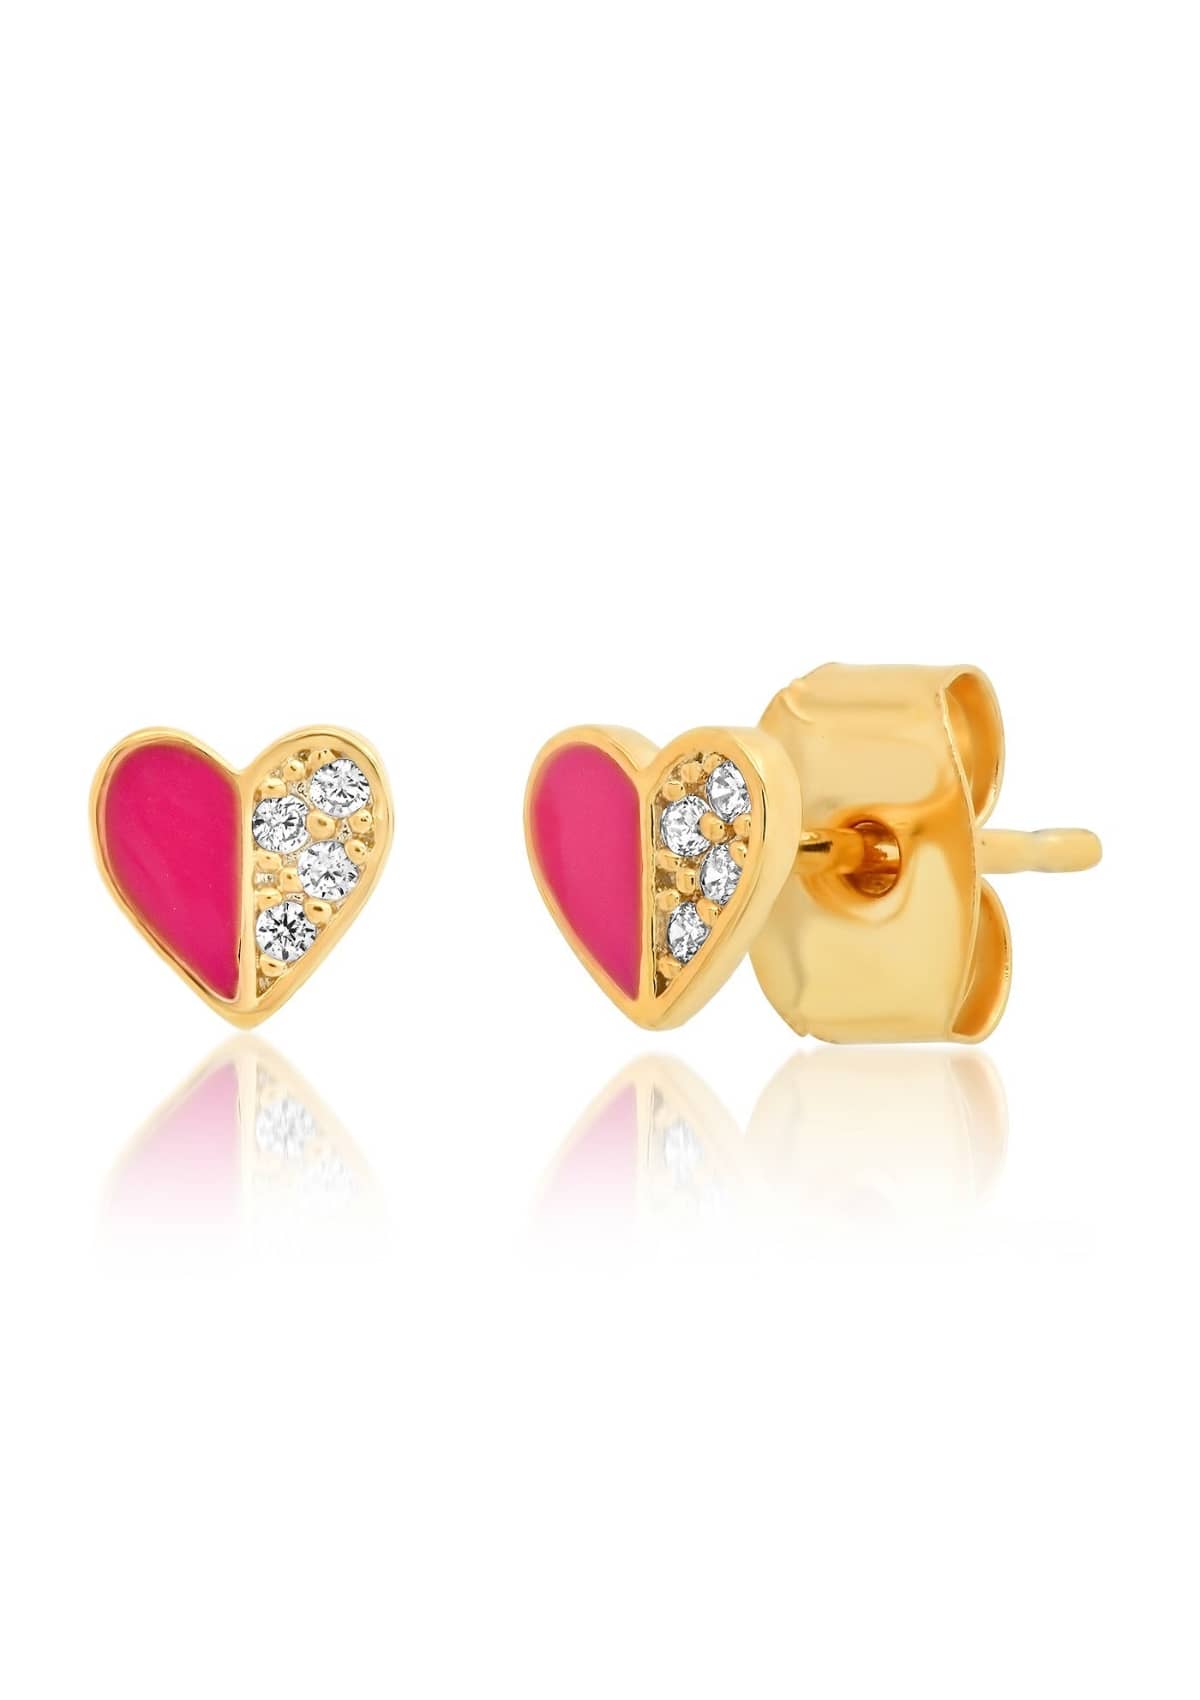 Pink Heart Enamel Stud Earrings -Tai Rittichai- Ruby Jane-